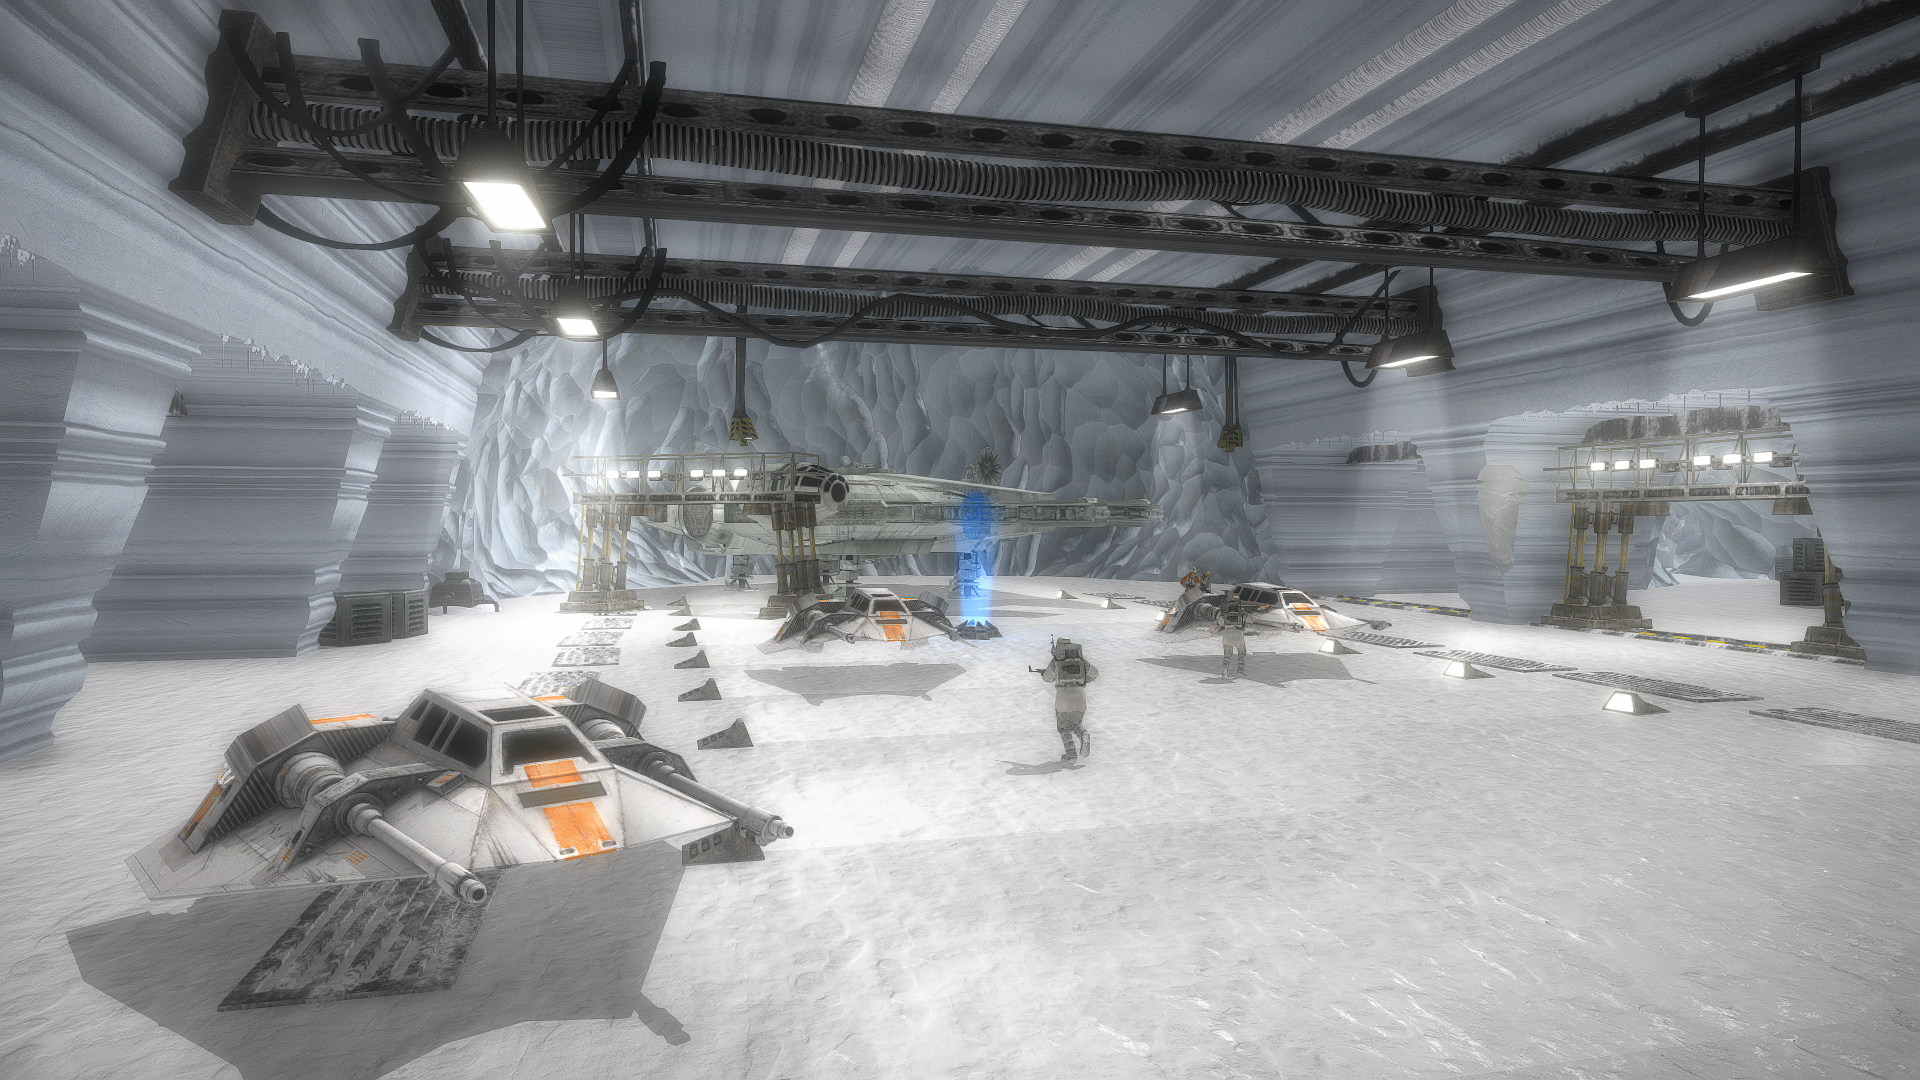 Echo Base Remake image - STAR WARS Battlefront 2 Remaster mod for Star Wars  Battlefront II - ModDB